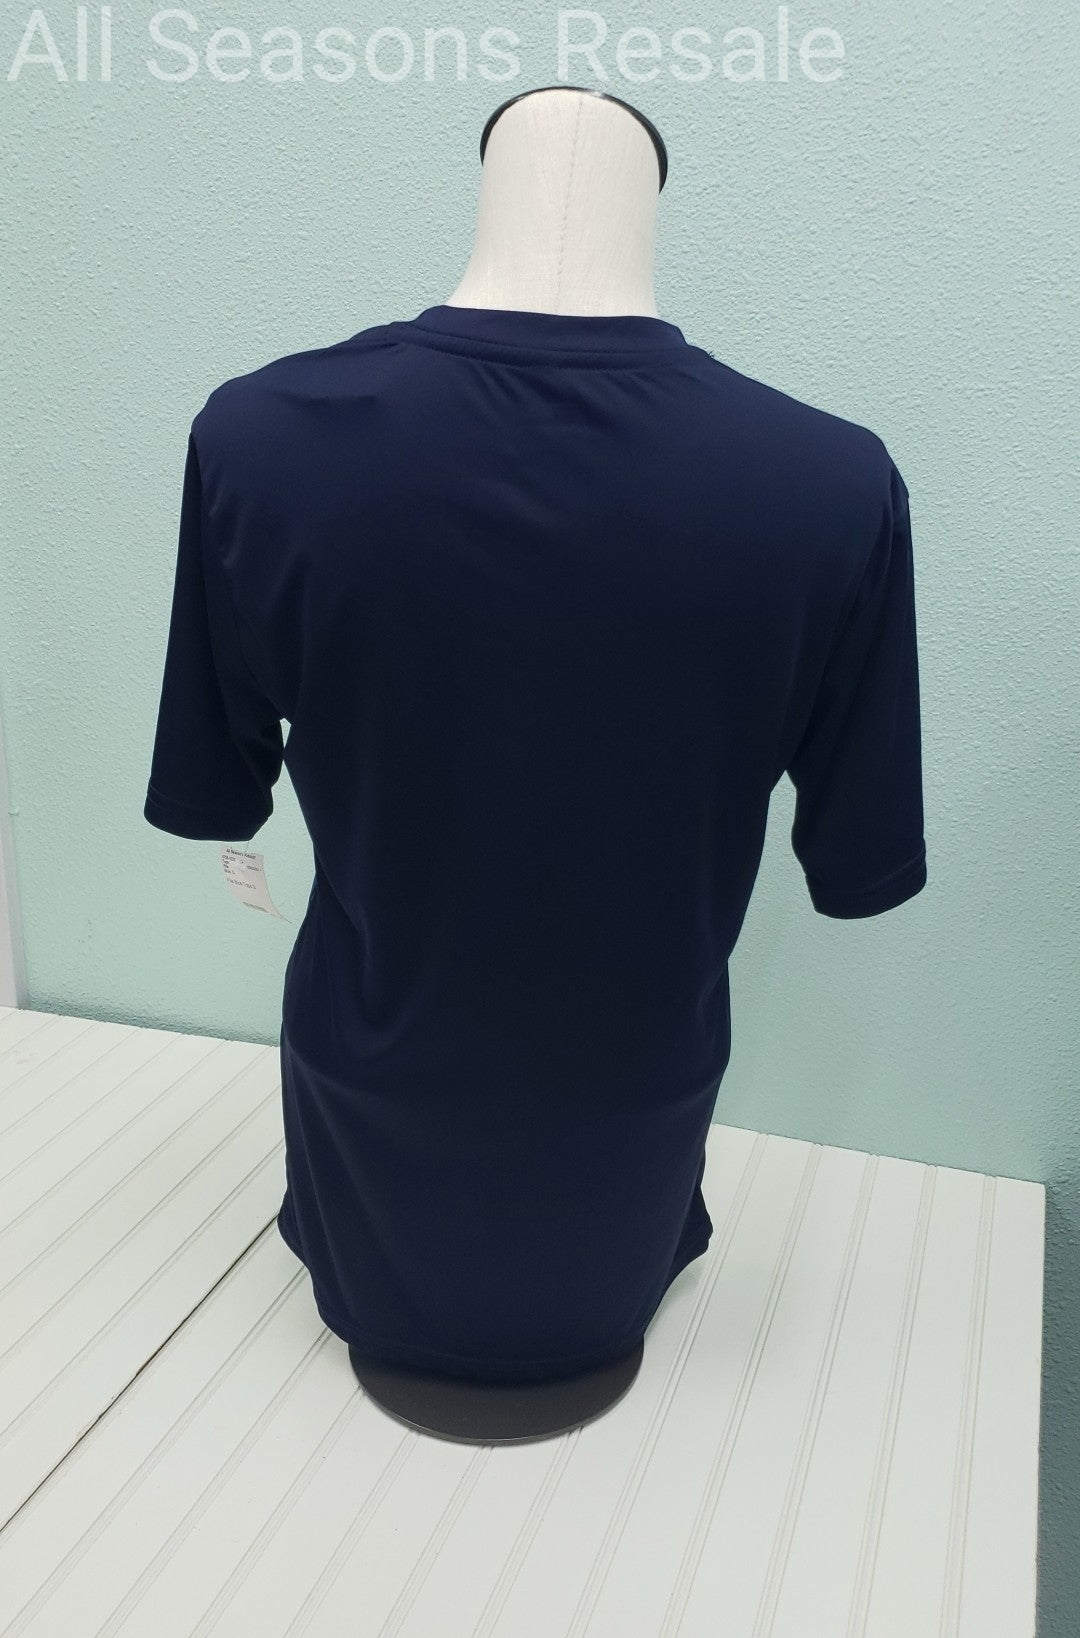 Men's Fila Activewear T Shirt Top Blus Size S 2D – All Seasons Resale